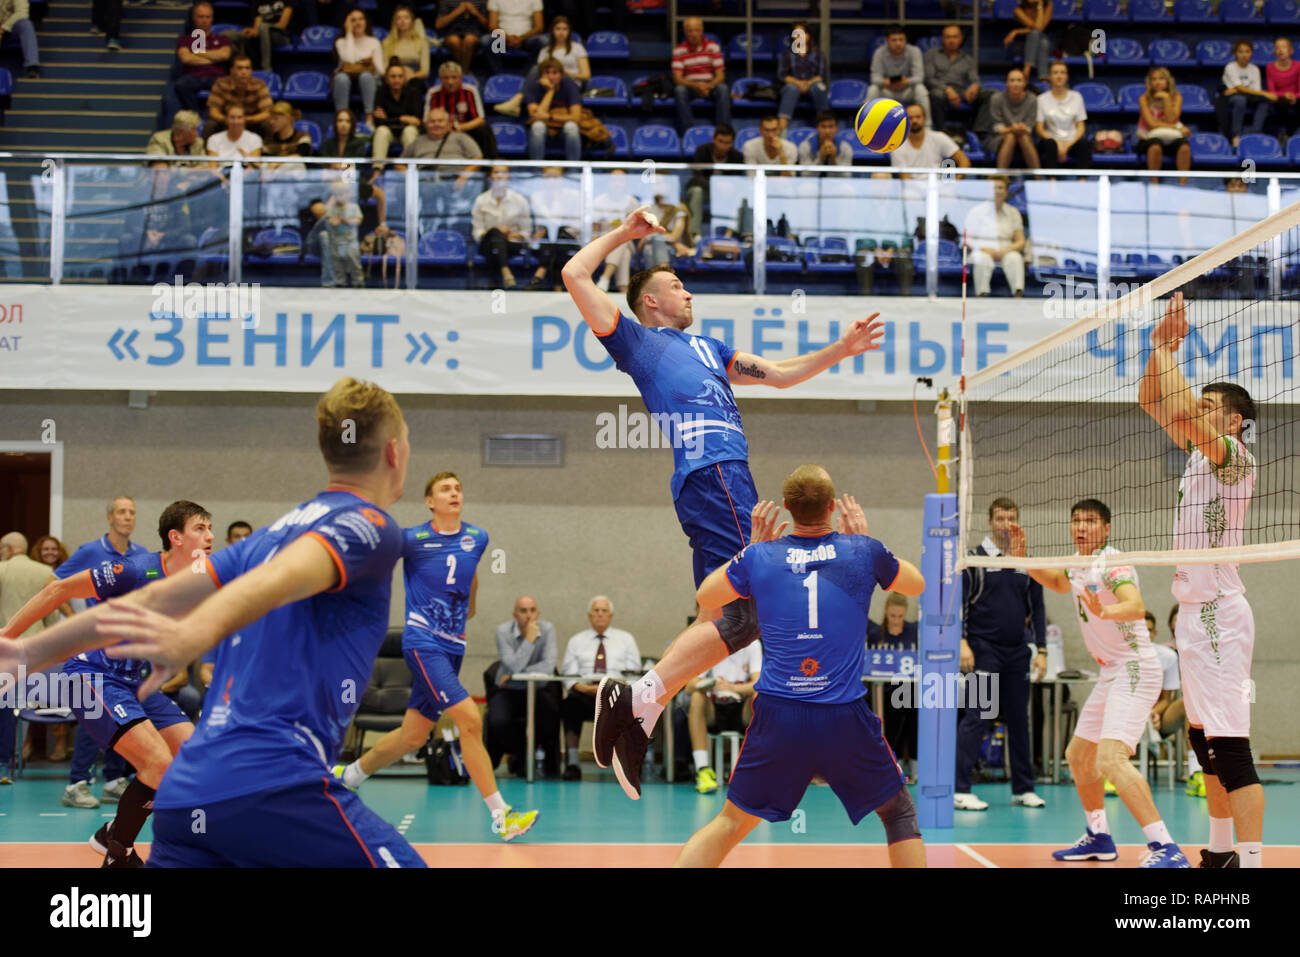 San Petersburgo, Rusia - Septiembre 5, 2018: Ataque en voleibol match Ural, Rusia vs Atyrau, Kazajstán durante el torneo internacional Vyacheslav P Foto de stock